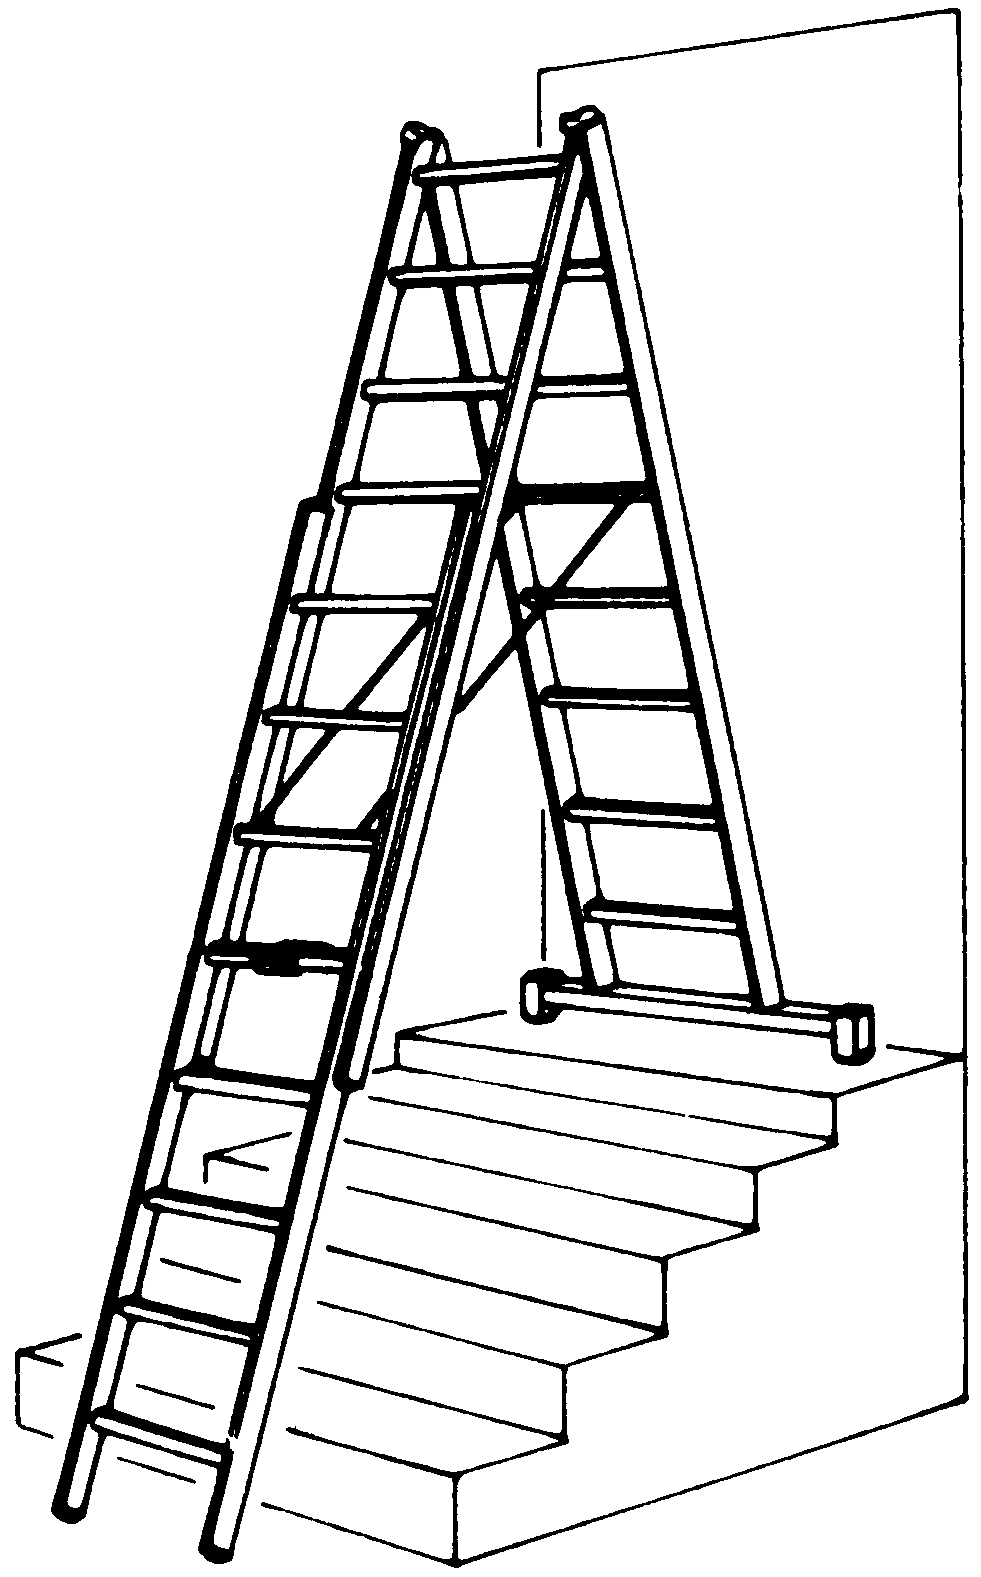 Treppenverstellungsklammer für Leitern Typ 6225